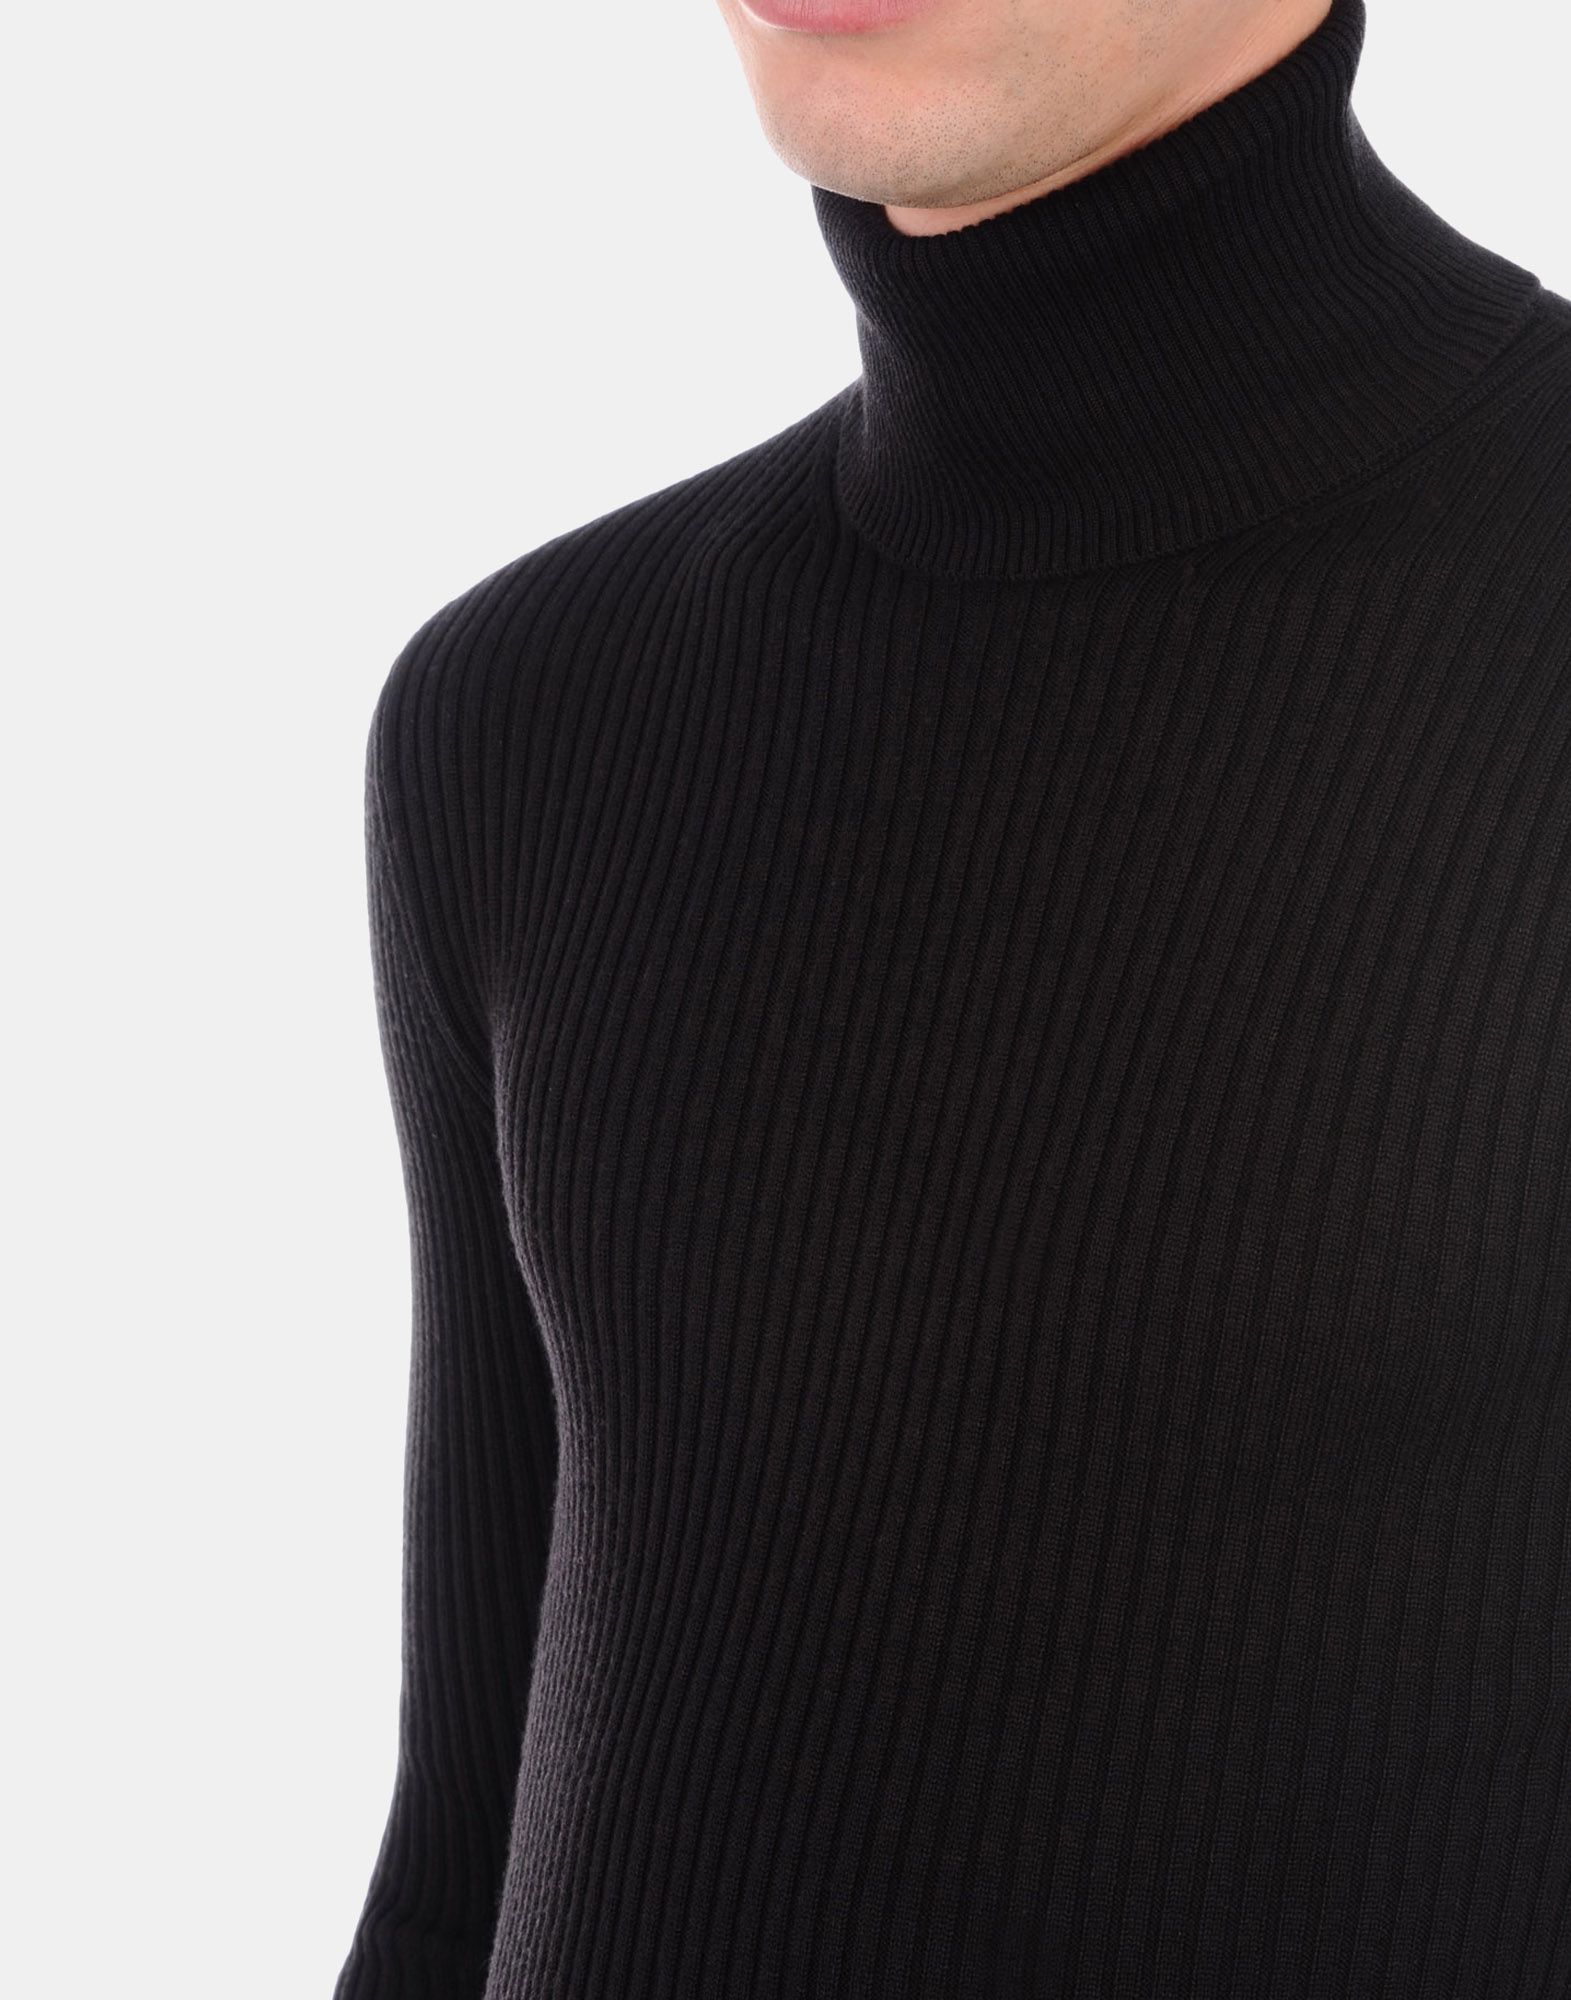 Sweater Men - Knitwear Men on Jil Sander Online Store